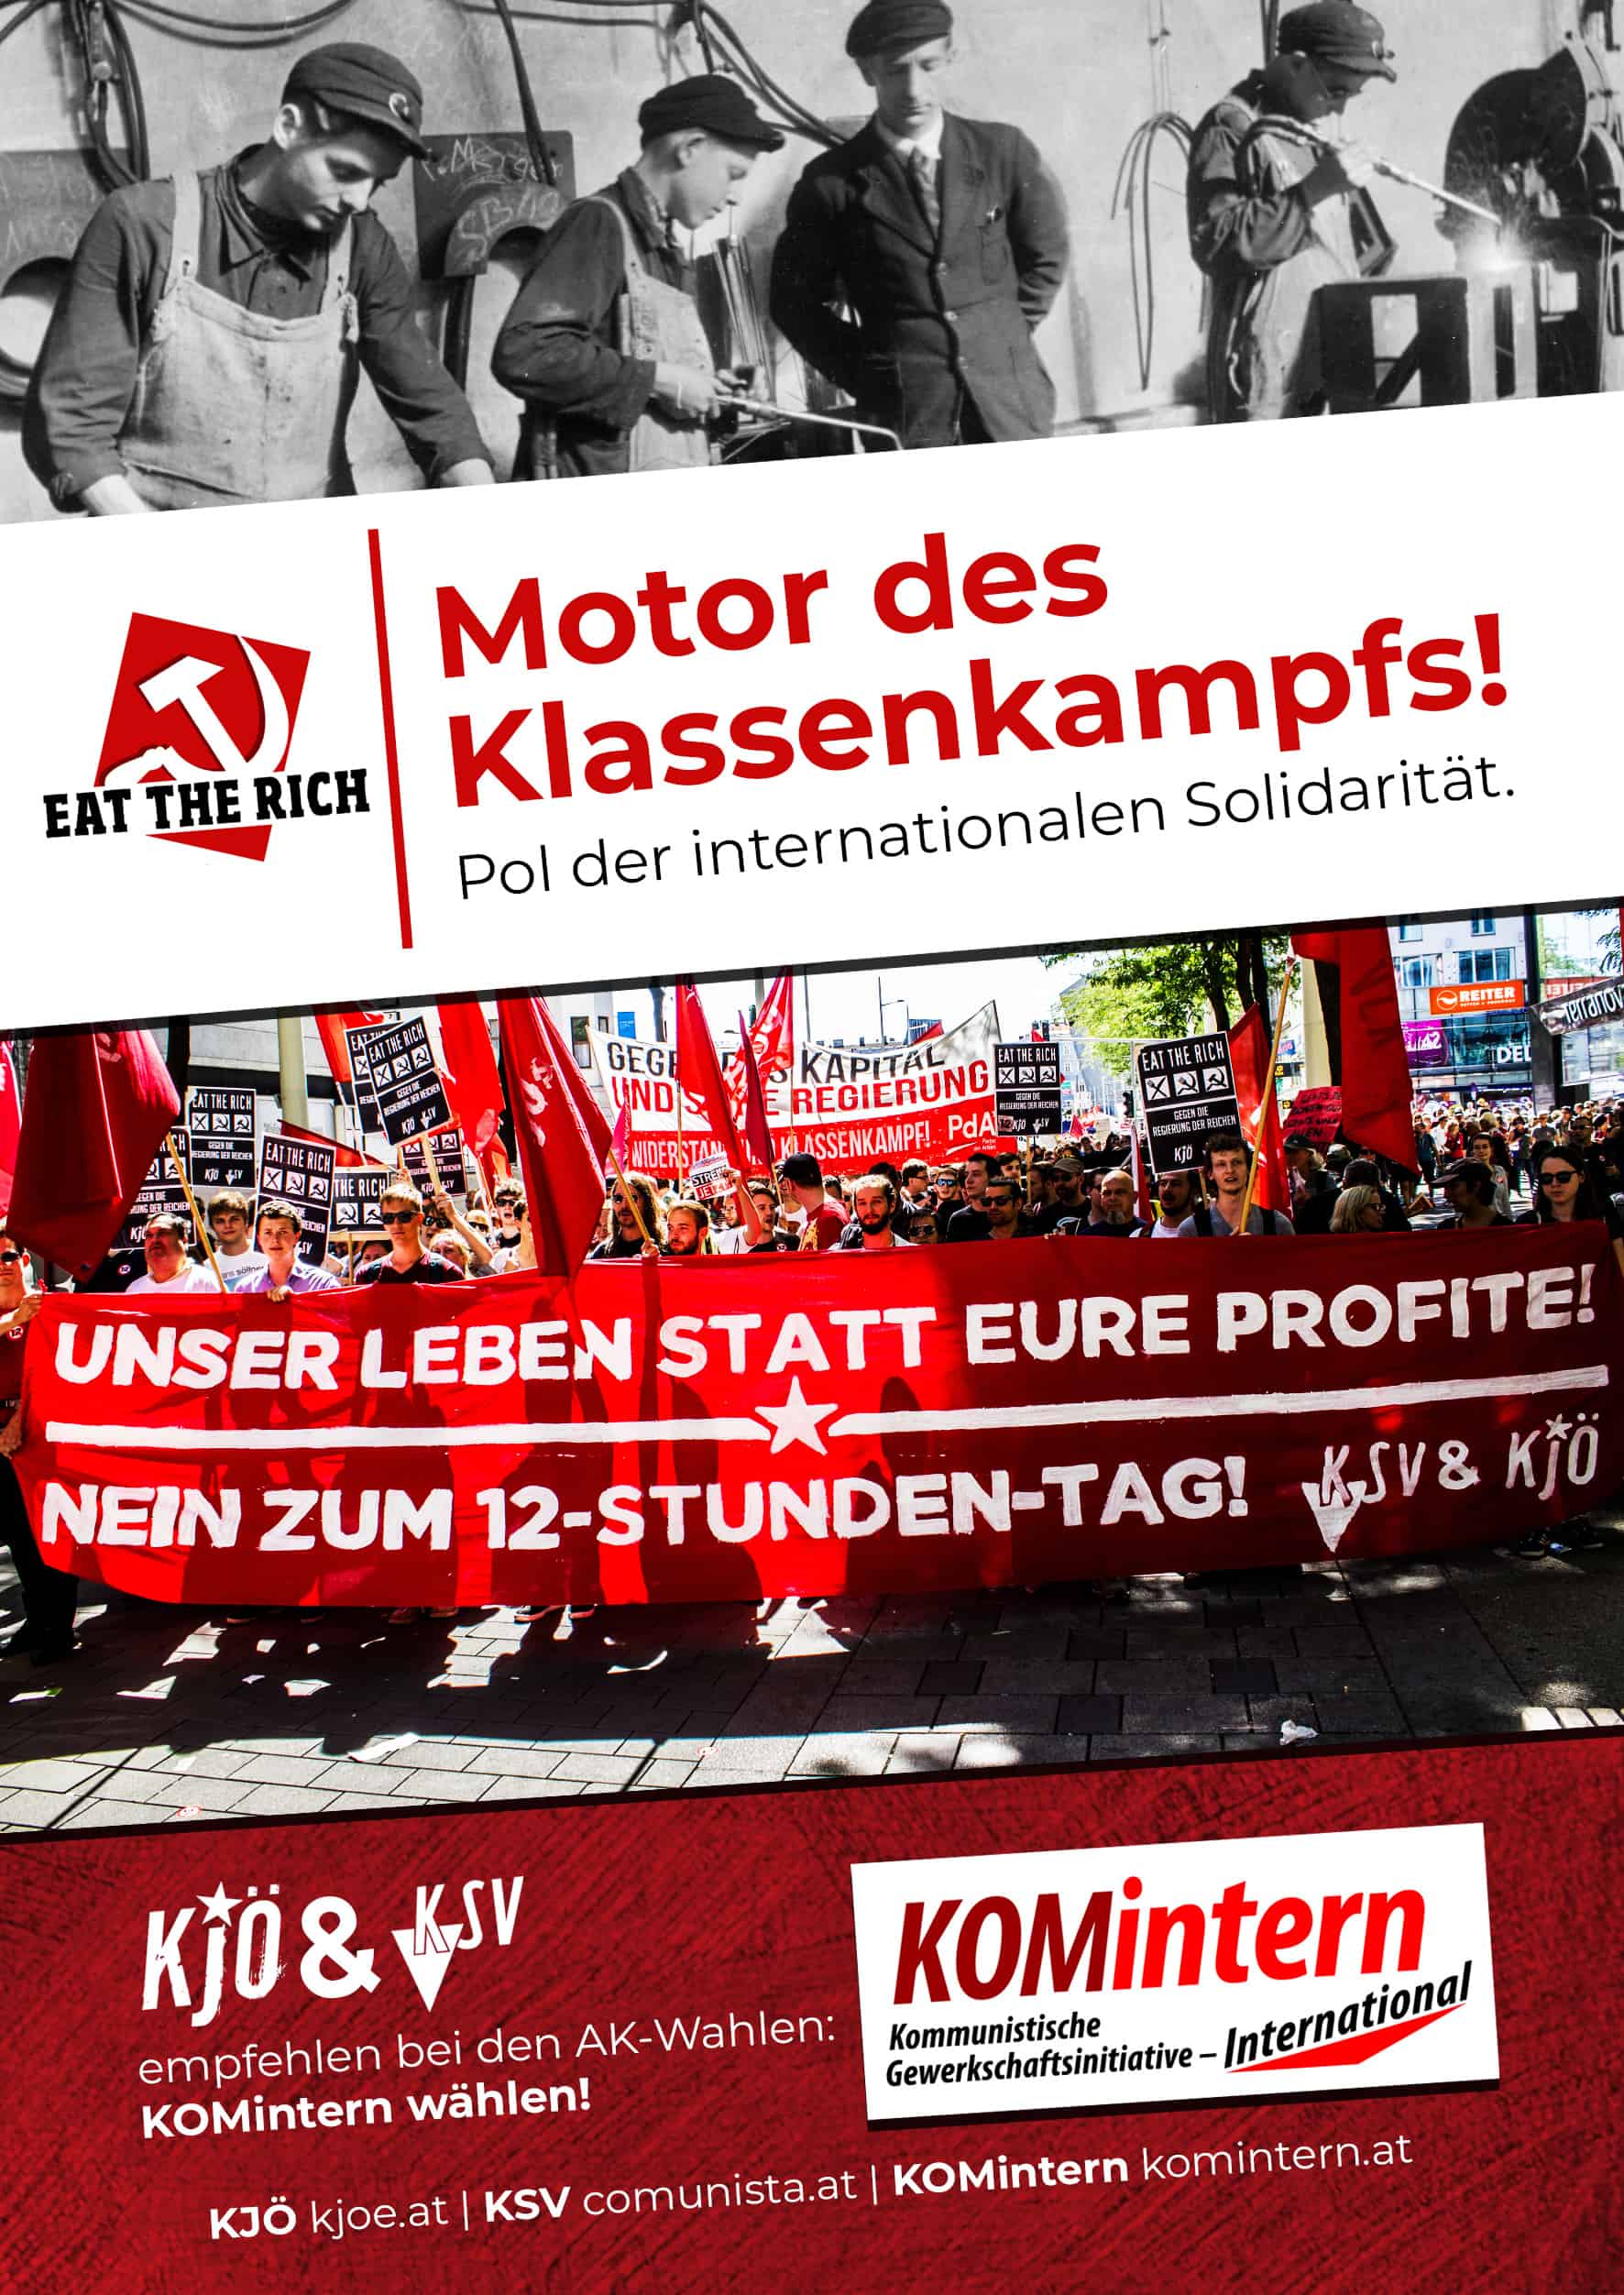 Flyer mit dem Titel "Motor des Klassenkampfs" anlässlich des Wahlaufrufes für Komintern zu den Arbeiterkammer Wahlen 2019.